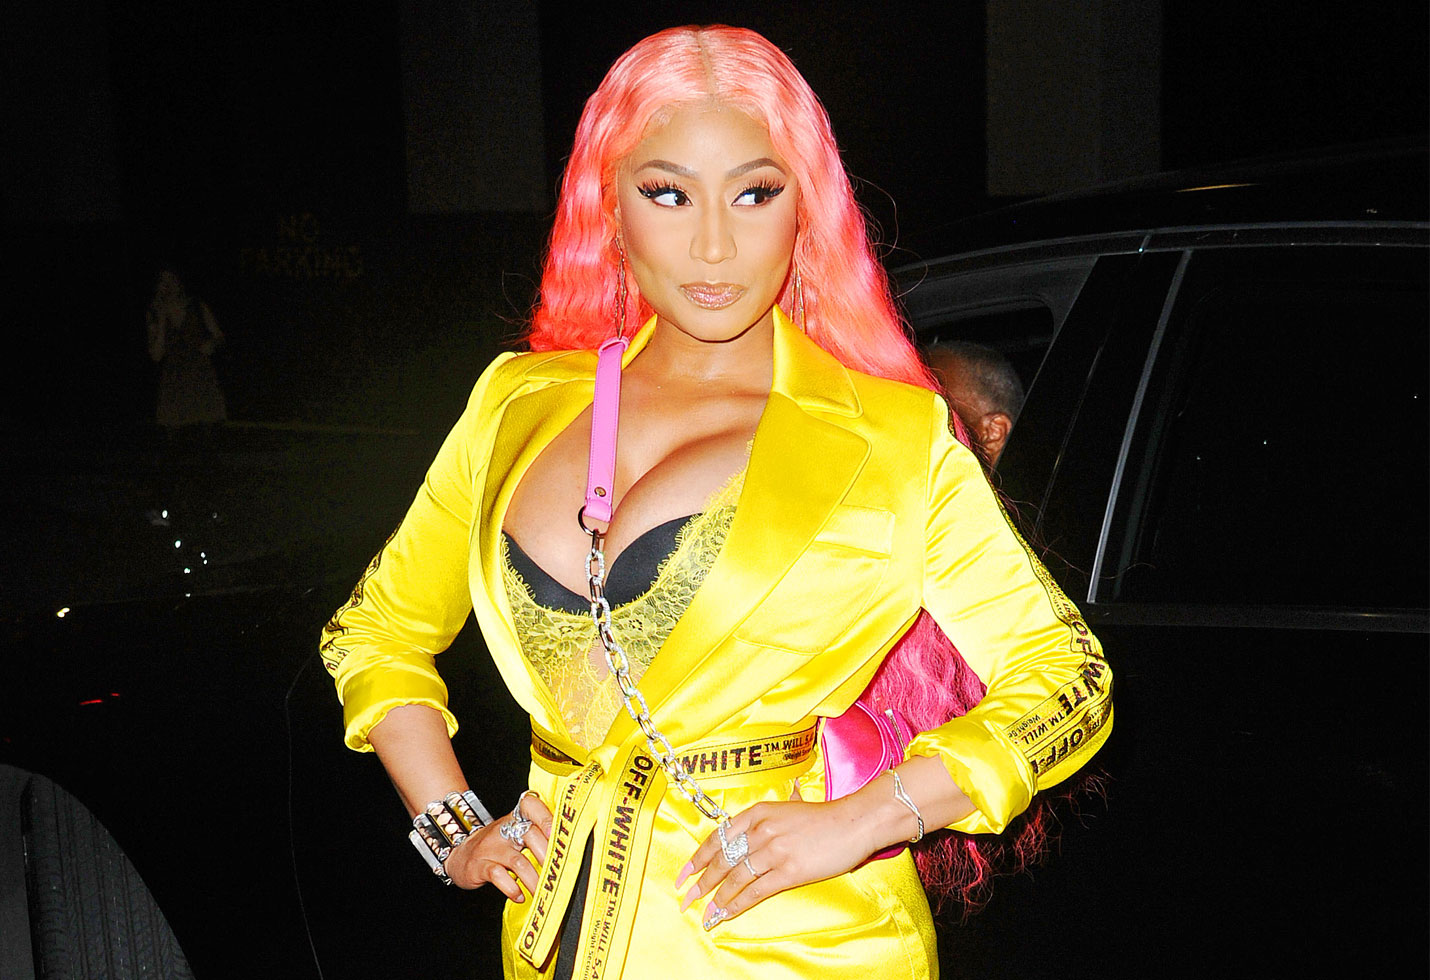 Nicki Minaj Is Pretty In Pink Wig At Nyfw Amid Travis Scott Feud